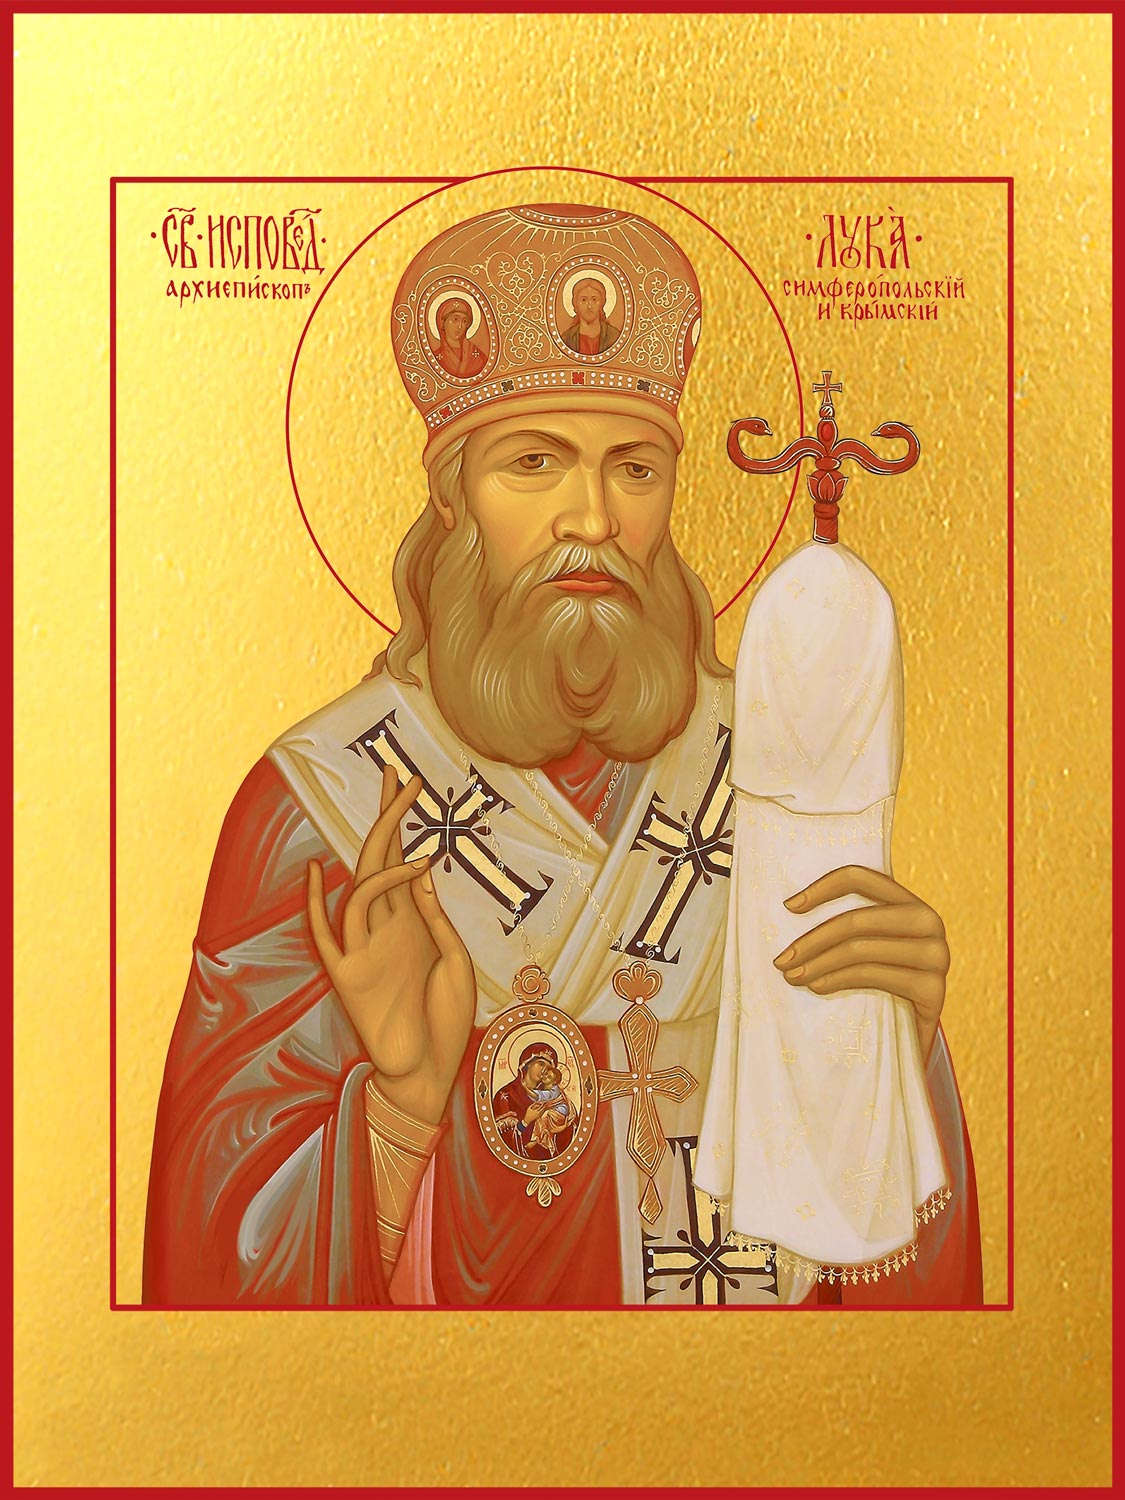 Про луку святого. Икона святителя Луки Войно-Ясенецкого архиепископа Крымского.